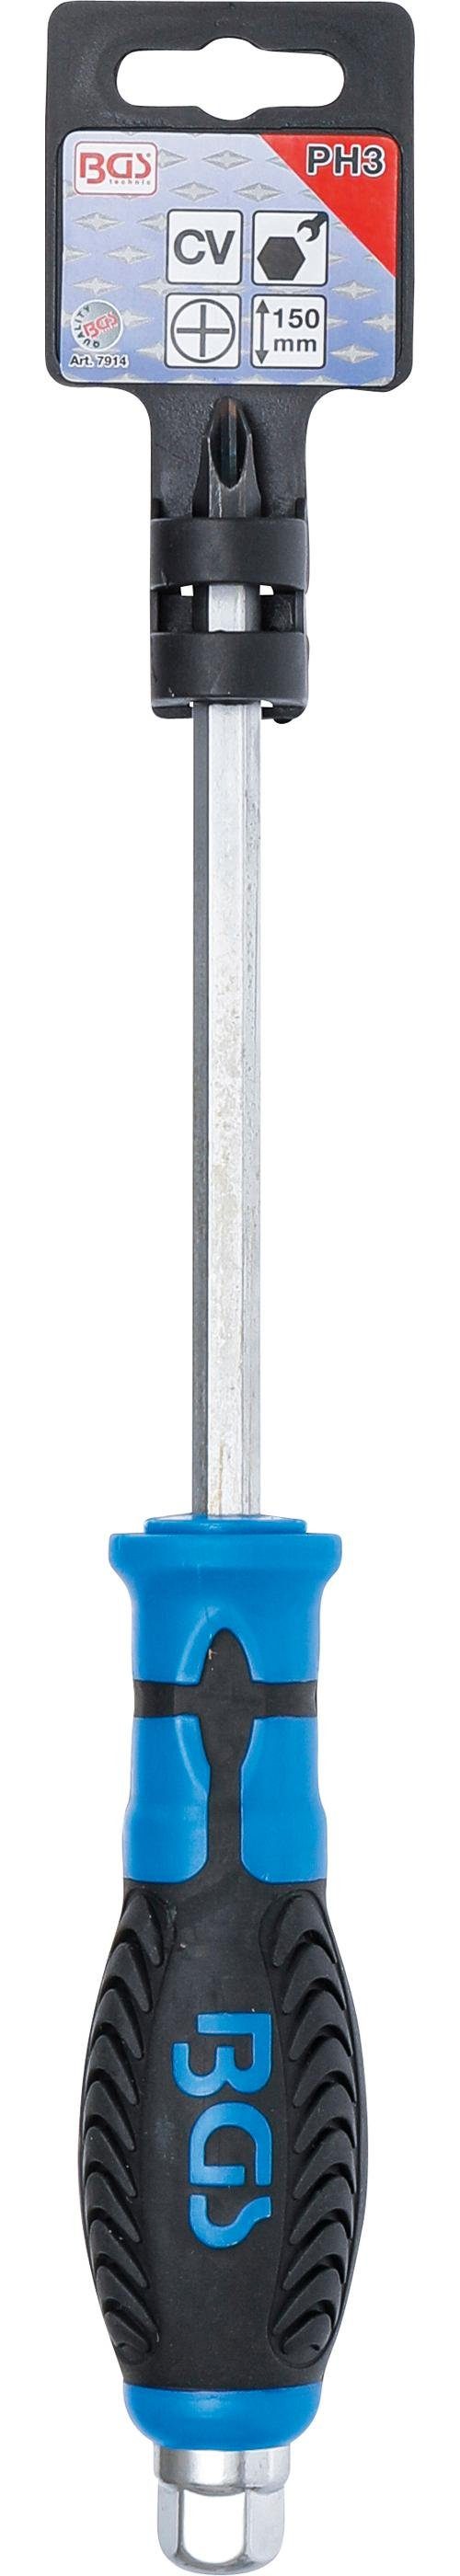 BGS technic Bit-Schraubendreher Schraubendreher, PH3, mm 150 mit Kreuzschlitz Sechskant-Profil, Klingenlänge Klinge